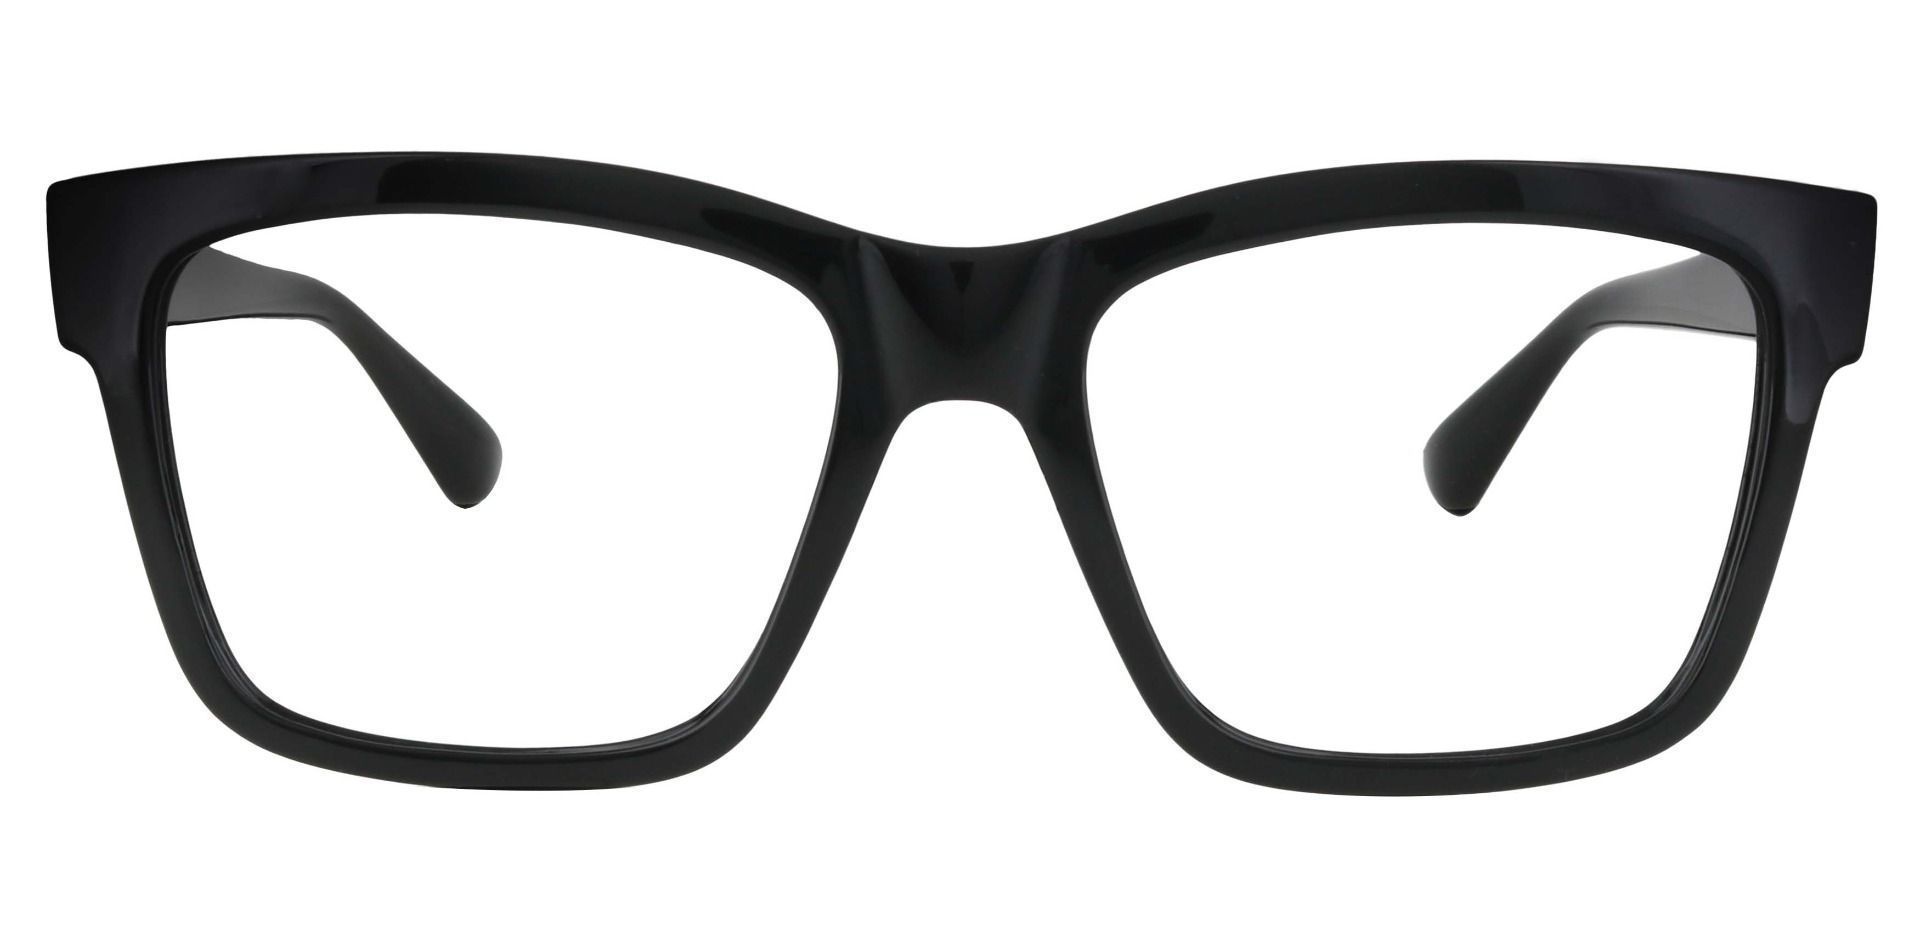 Brinley Square Prescription Glasses - Black